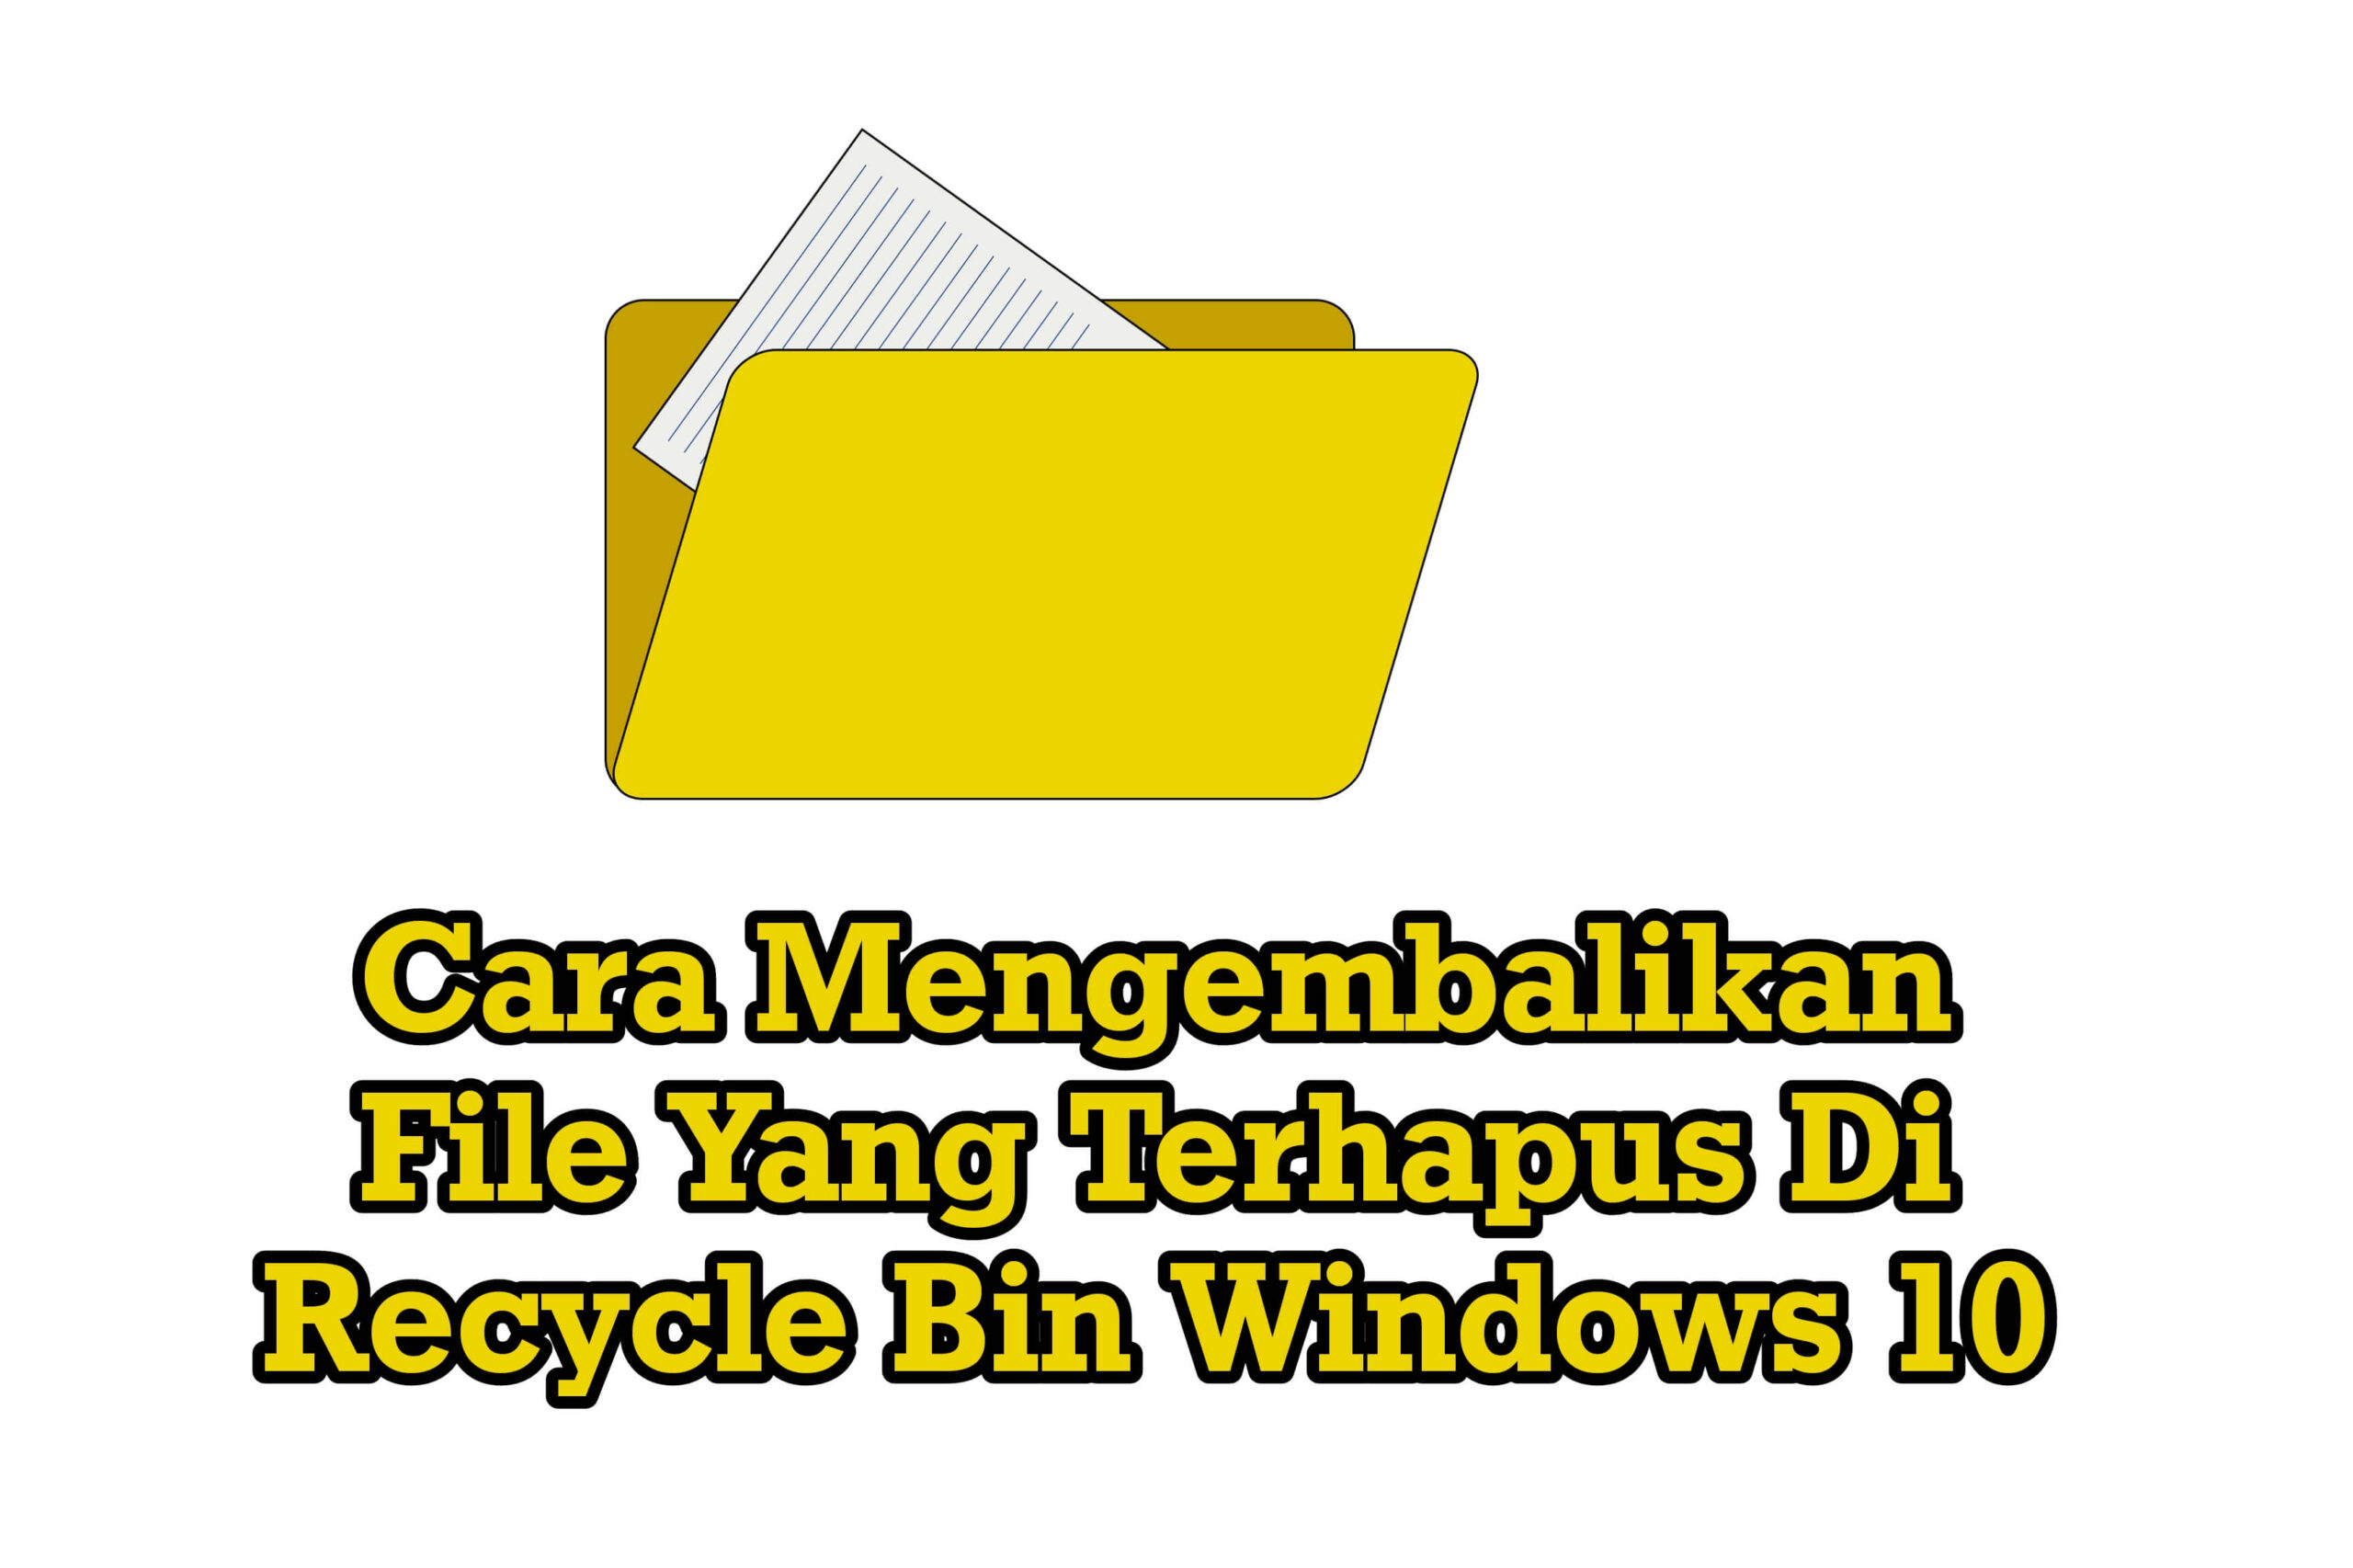 Cara Mengembalikan File Yang Terhapus Di Recycle Bin